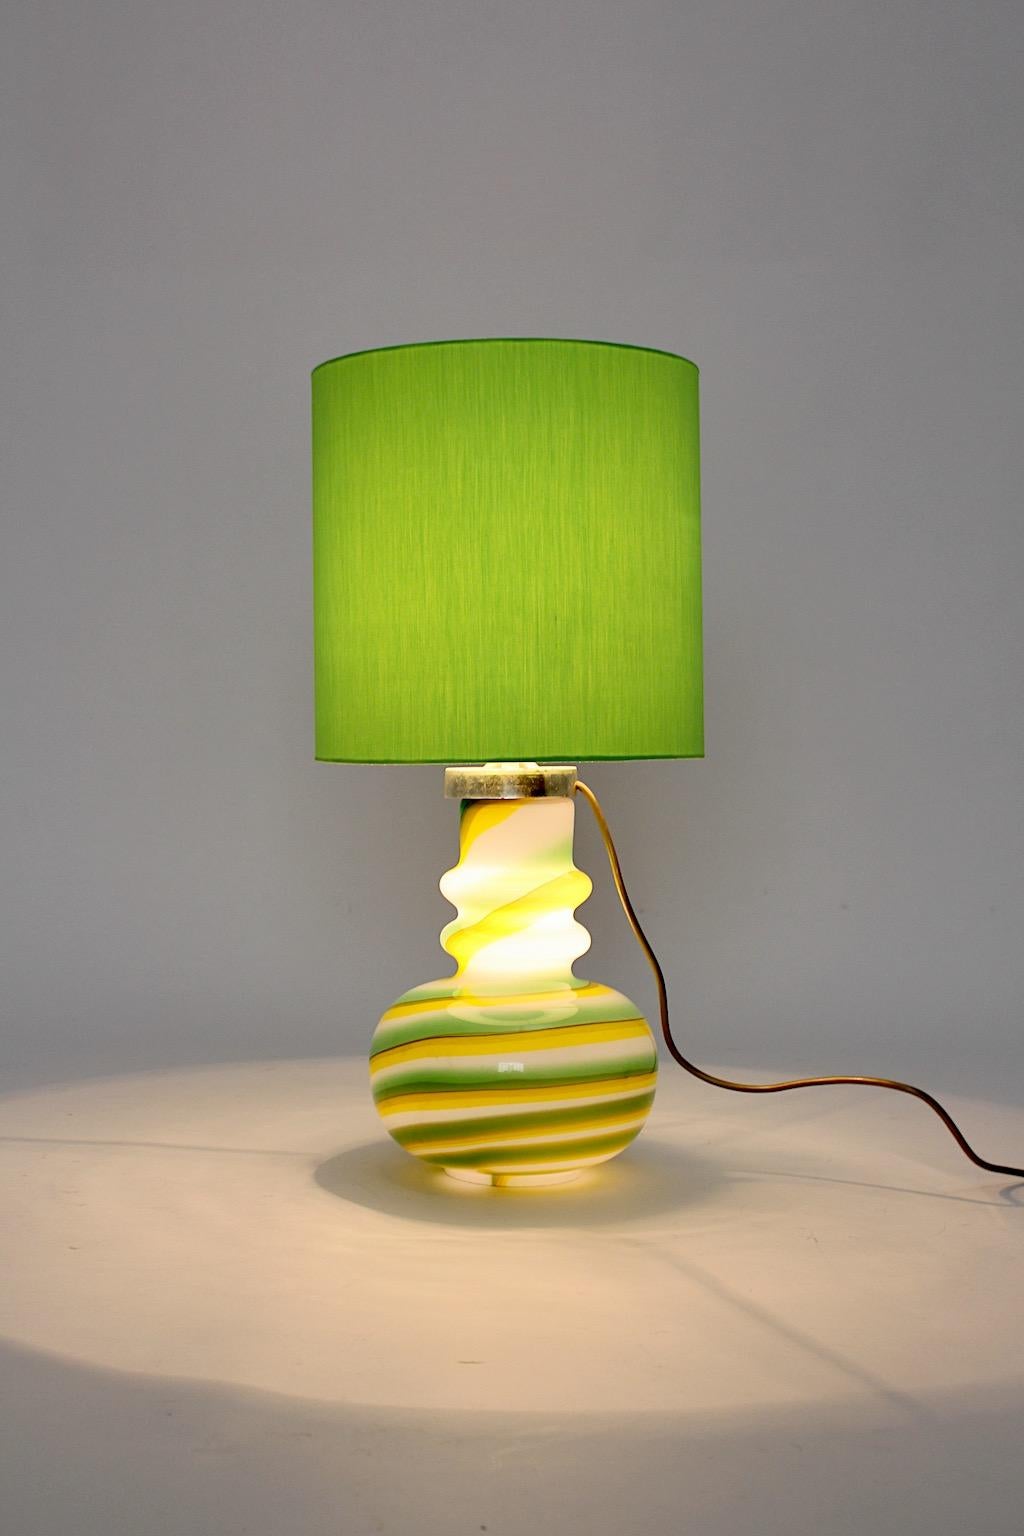 Lampe de table vintage Space Age en verre aux couleurs joyeuses vert, jaune et blanc conçue et exécutée, Italie, années 1960.
Alors que le corps en verre rayé présente une belle forme, l'abat-jour vert gazon est renouvelé.
Deux prises de courant E